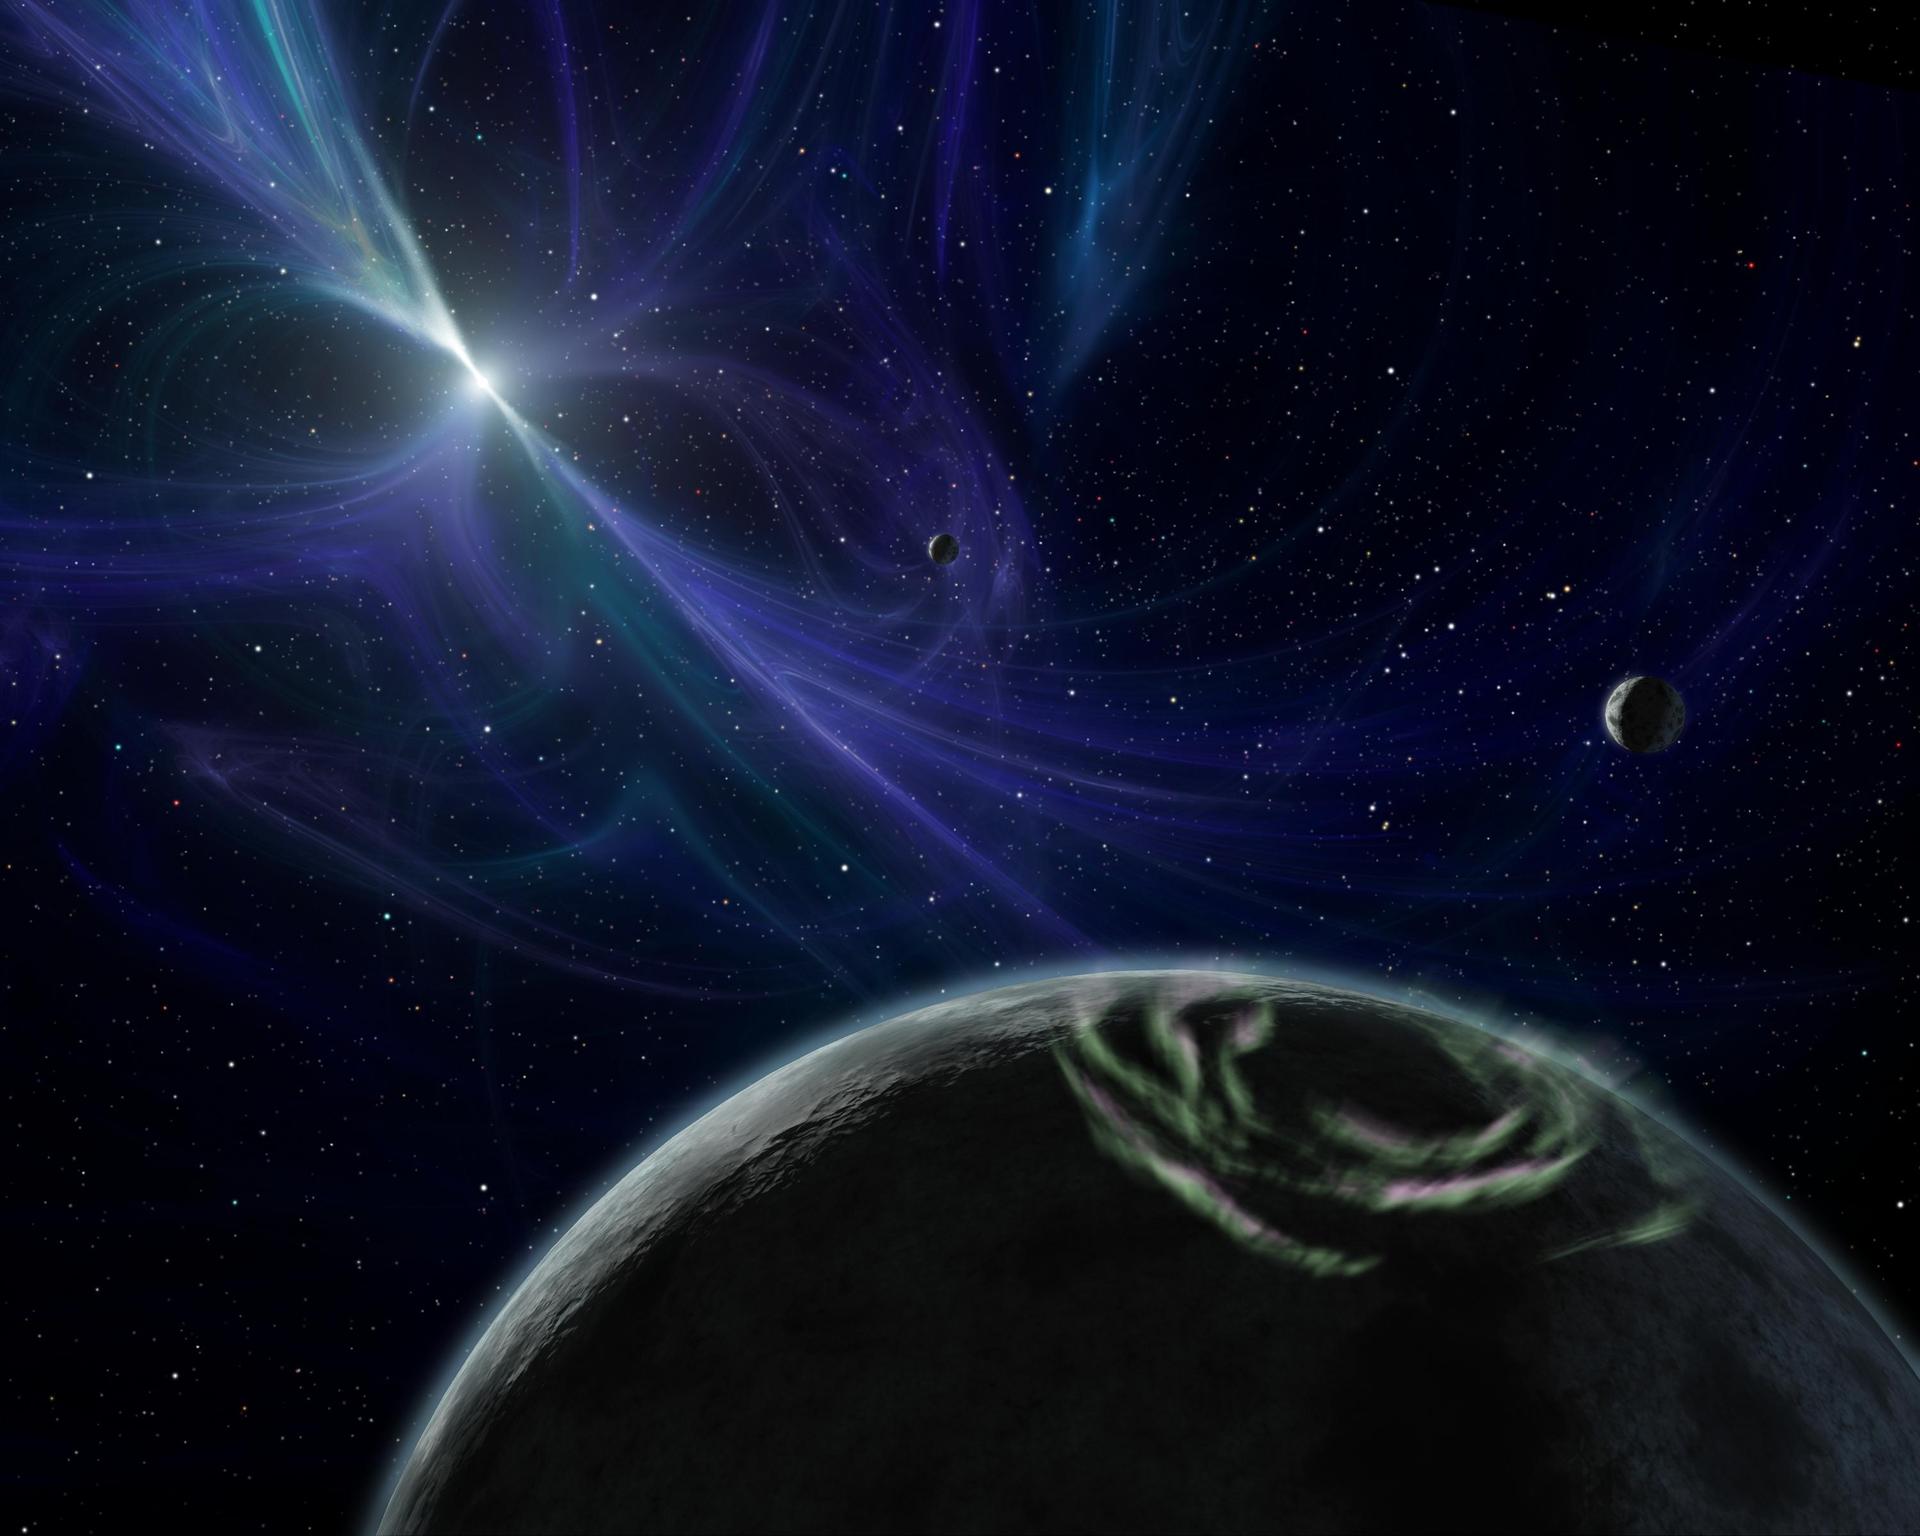 Representación artística del Sistema planetario descubierto por Aleksander Wolszczan en 1992. NASA/JPL-Caltech